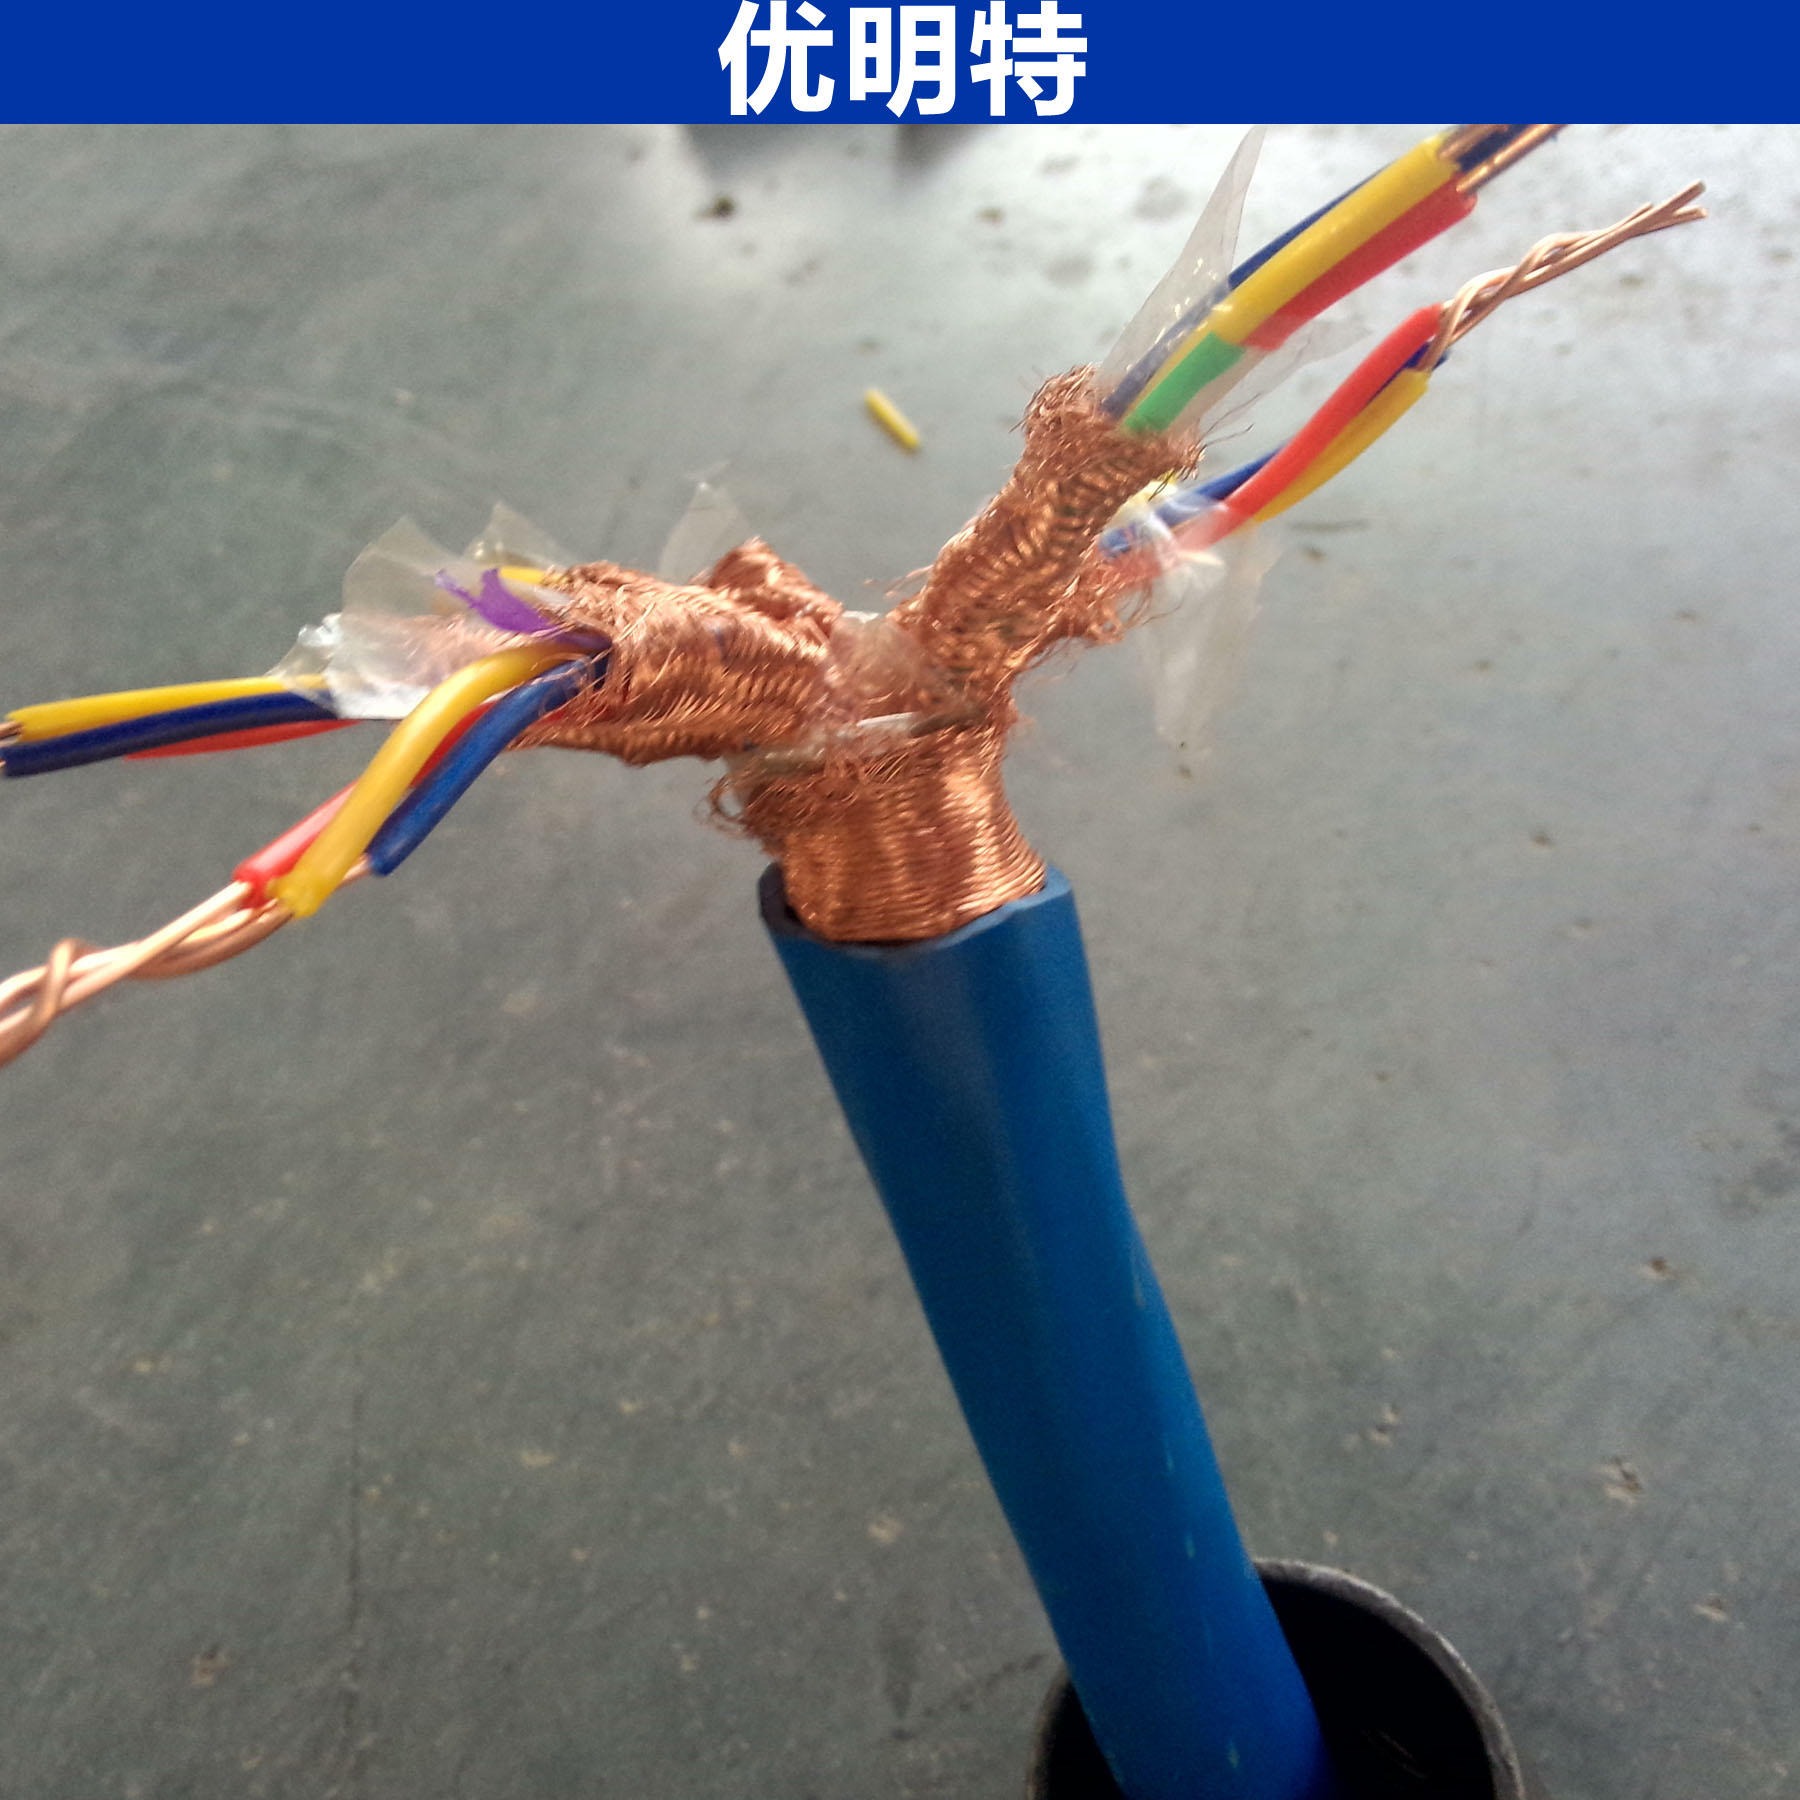 优明特 本安氟塑料电缆 ia-djfpfp电缆 ia-djffp电缆 生产厂家 现货库存